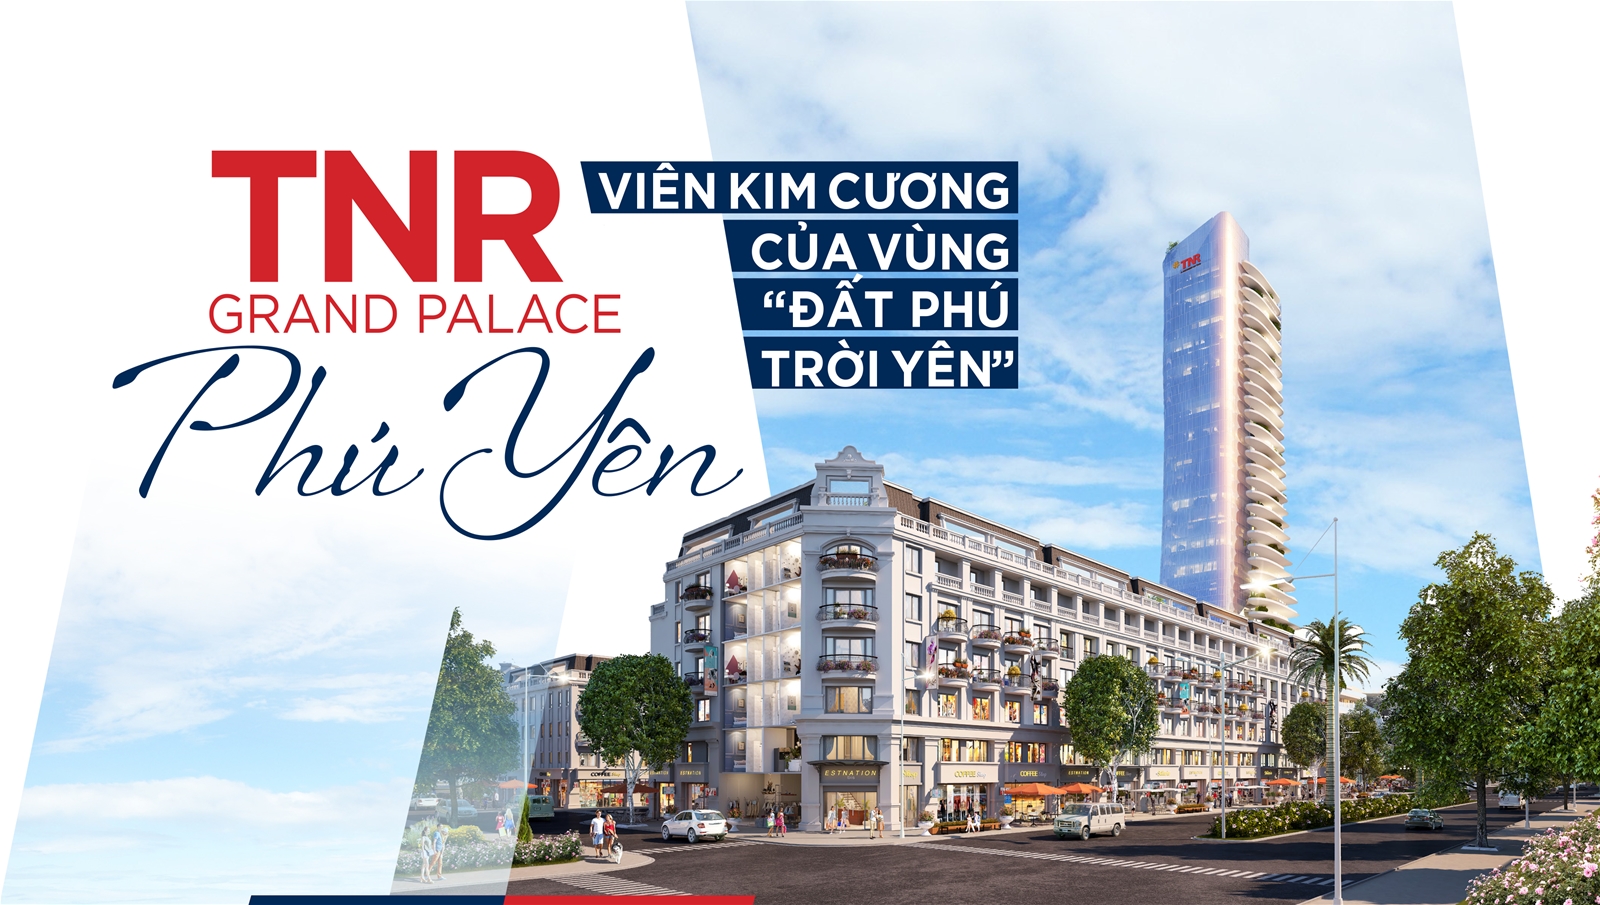 TNR Grand Palace Phú Yên - Viên kim cương của vùng “đất Phú trời Yên”